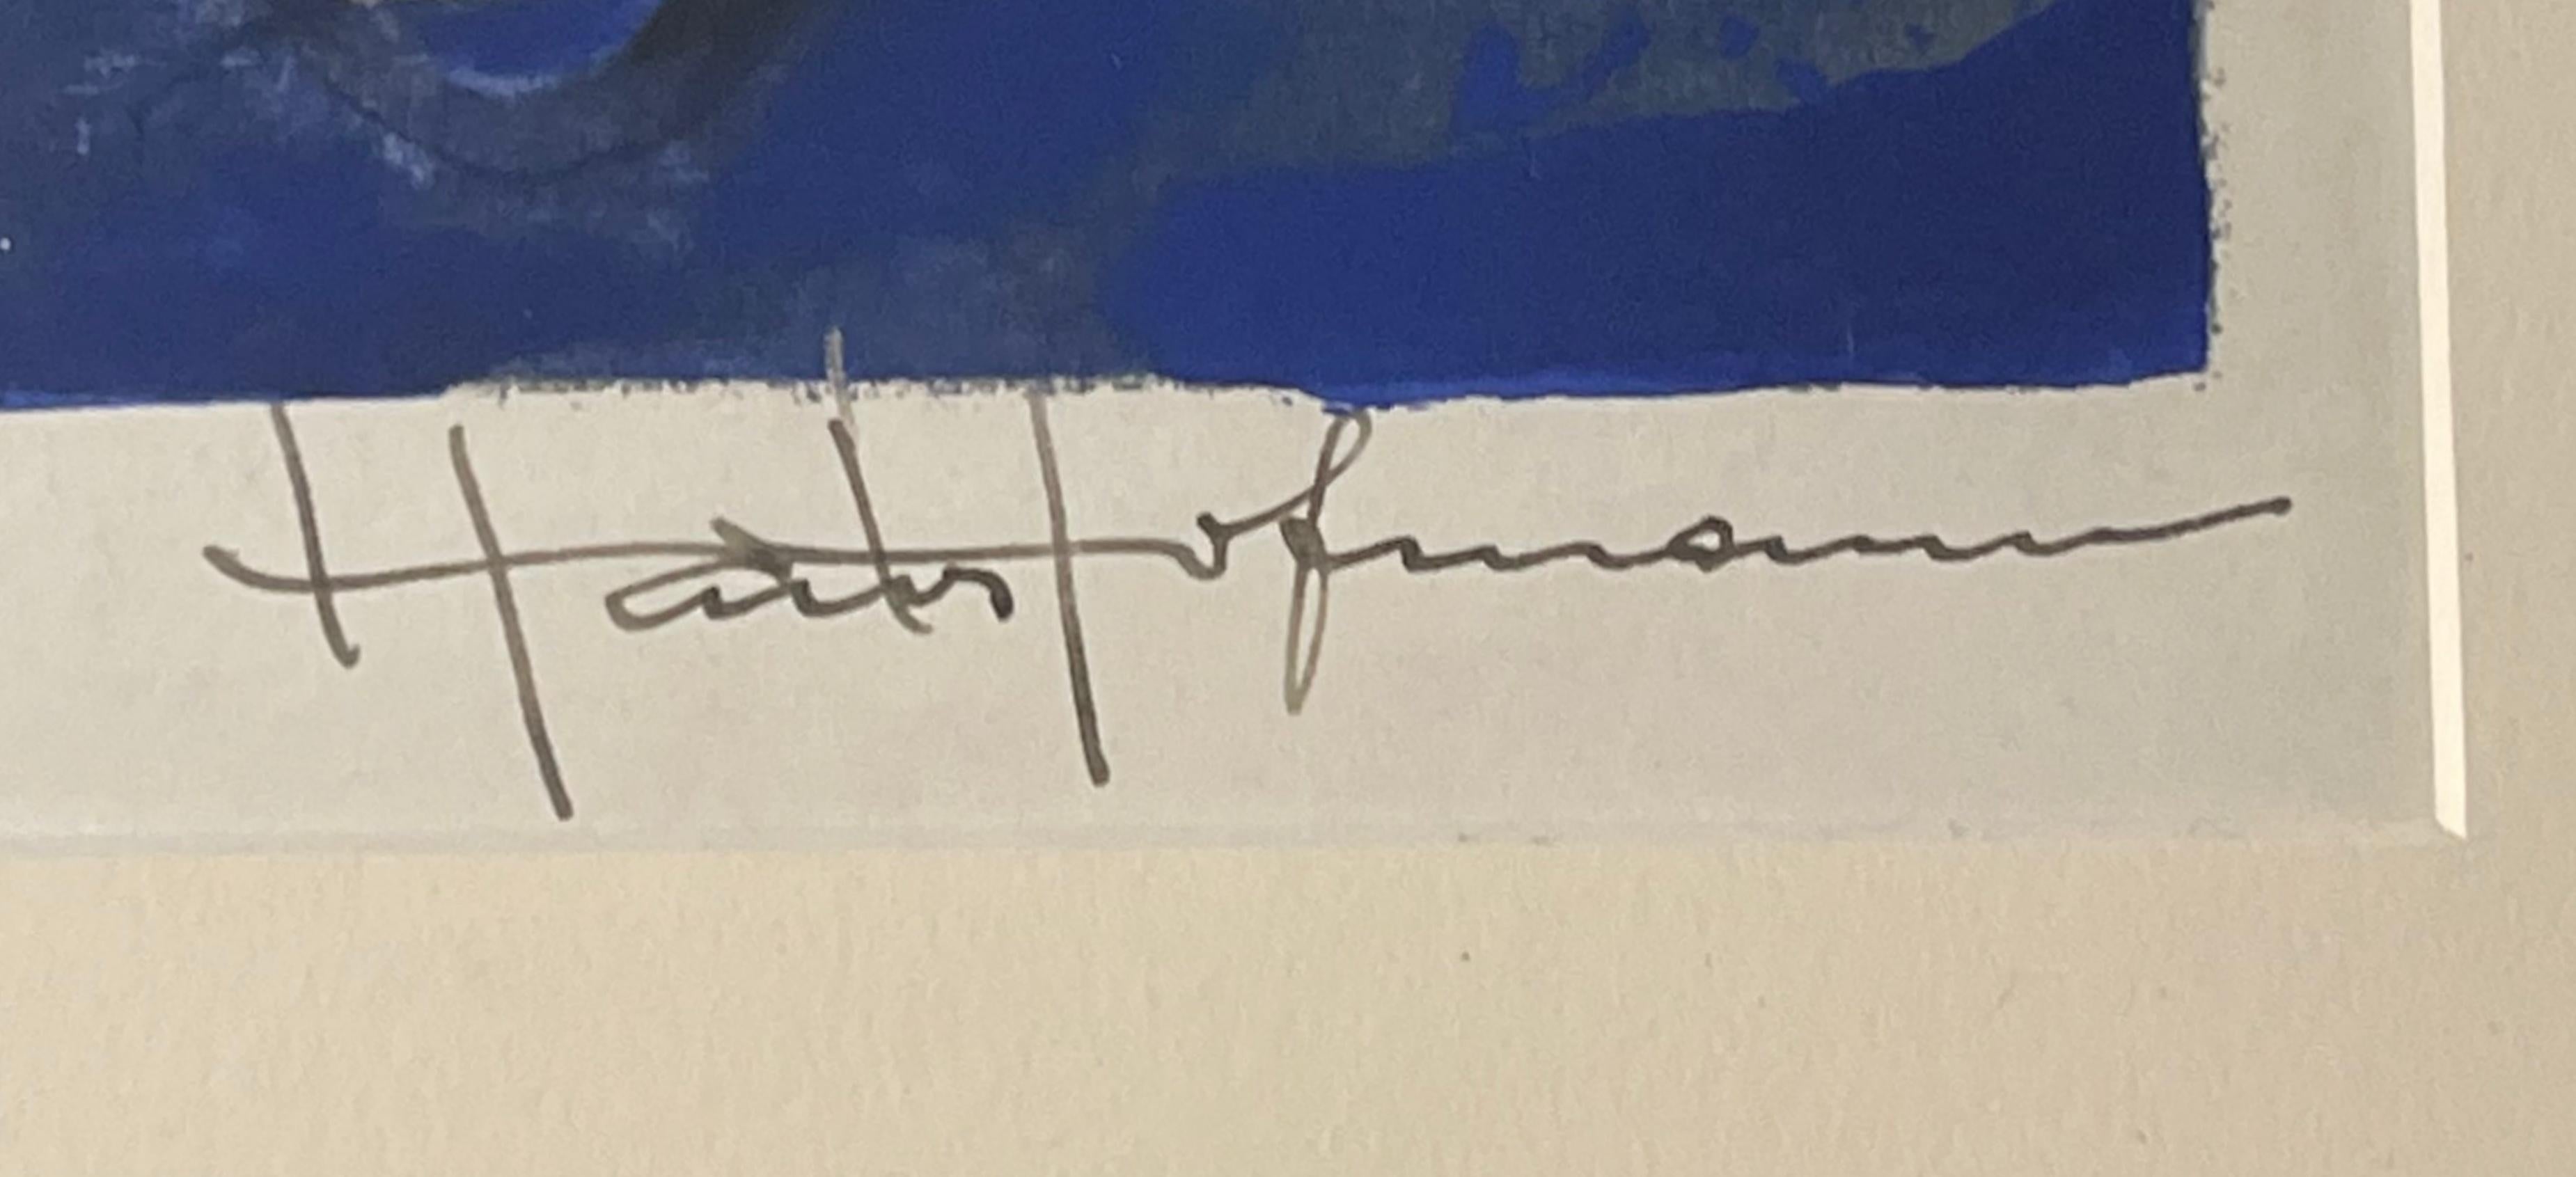 Hans Hofmann
Komposition in Blau, 1952
Farbserigrafie mit einzigartigen handgemalten Gouache-Zusätzen
Handsigniert und nummeriert 76/120 auf der Vorderseite in Tinte
(jedes Beispiel ist eine einzigartige Variante mit Handbemalung) 
Herausgegeben von